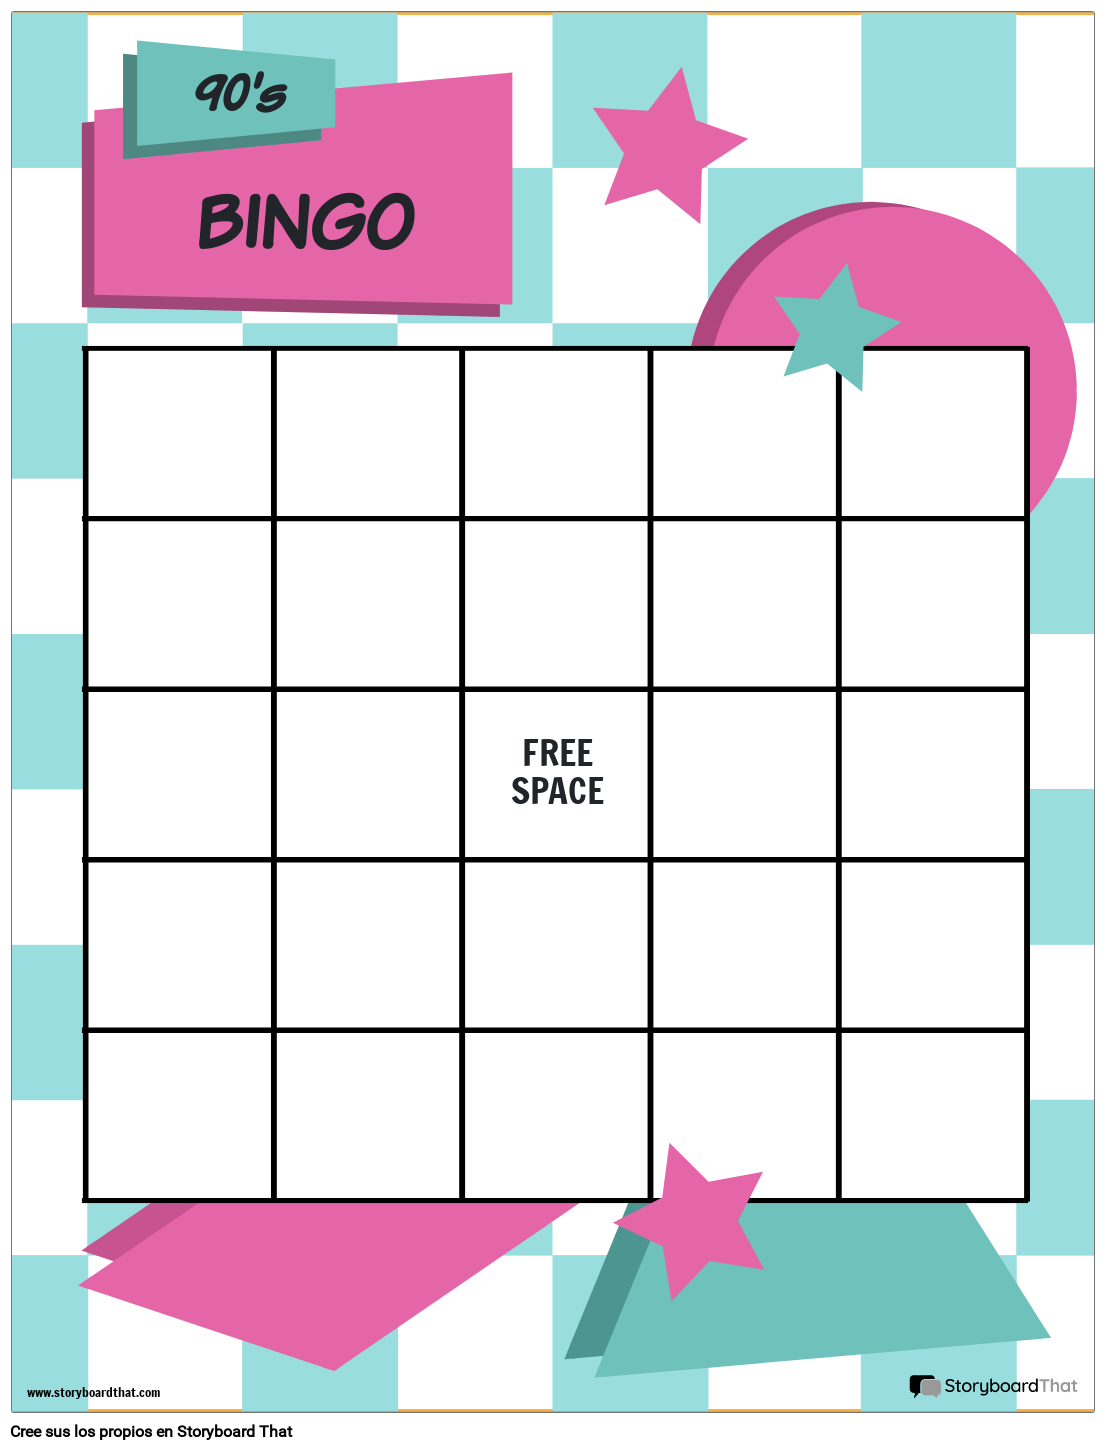 pronto Activamente recibir Plantilla de Cartones de Bingo — Hacer Cartones de Bingo | StoryboardThat